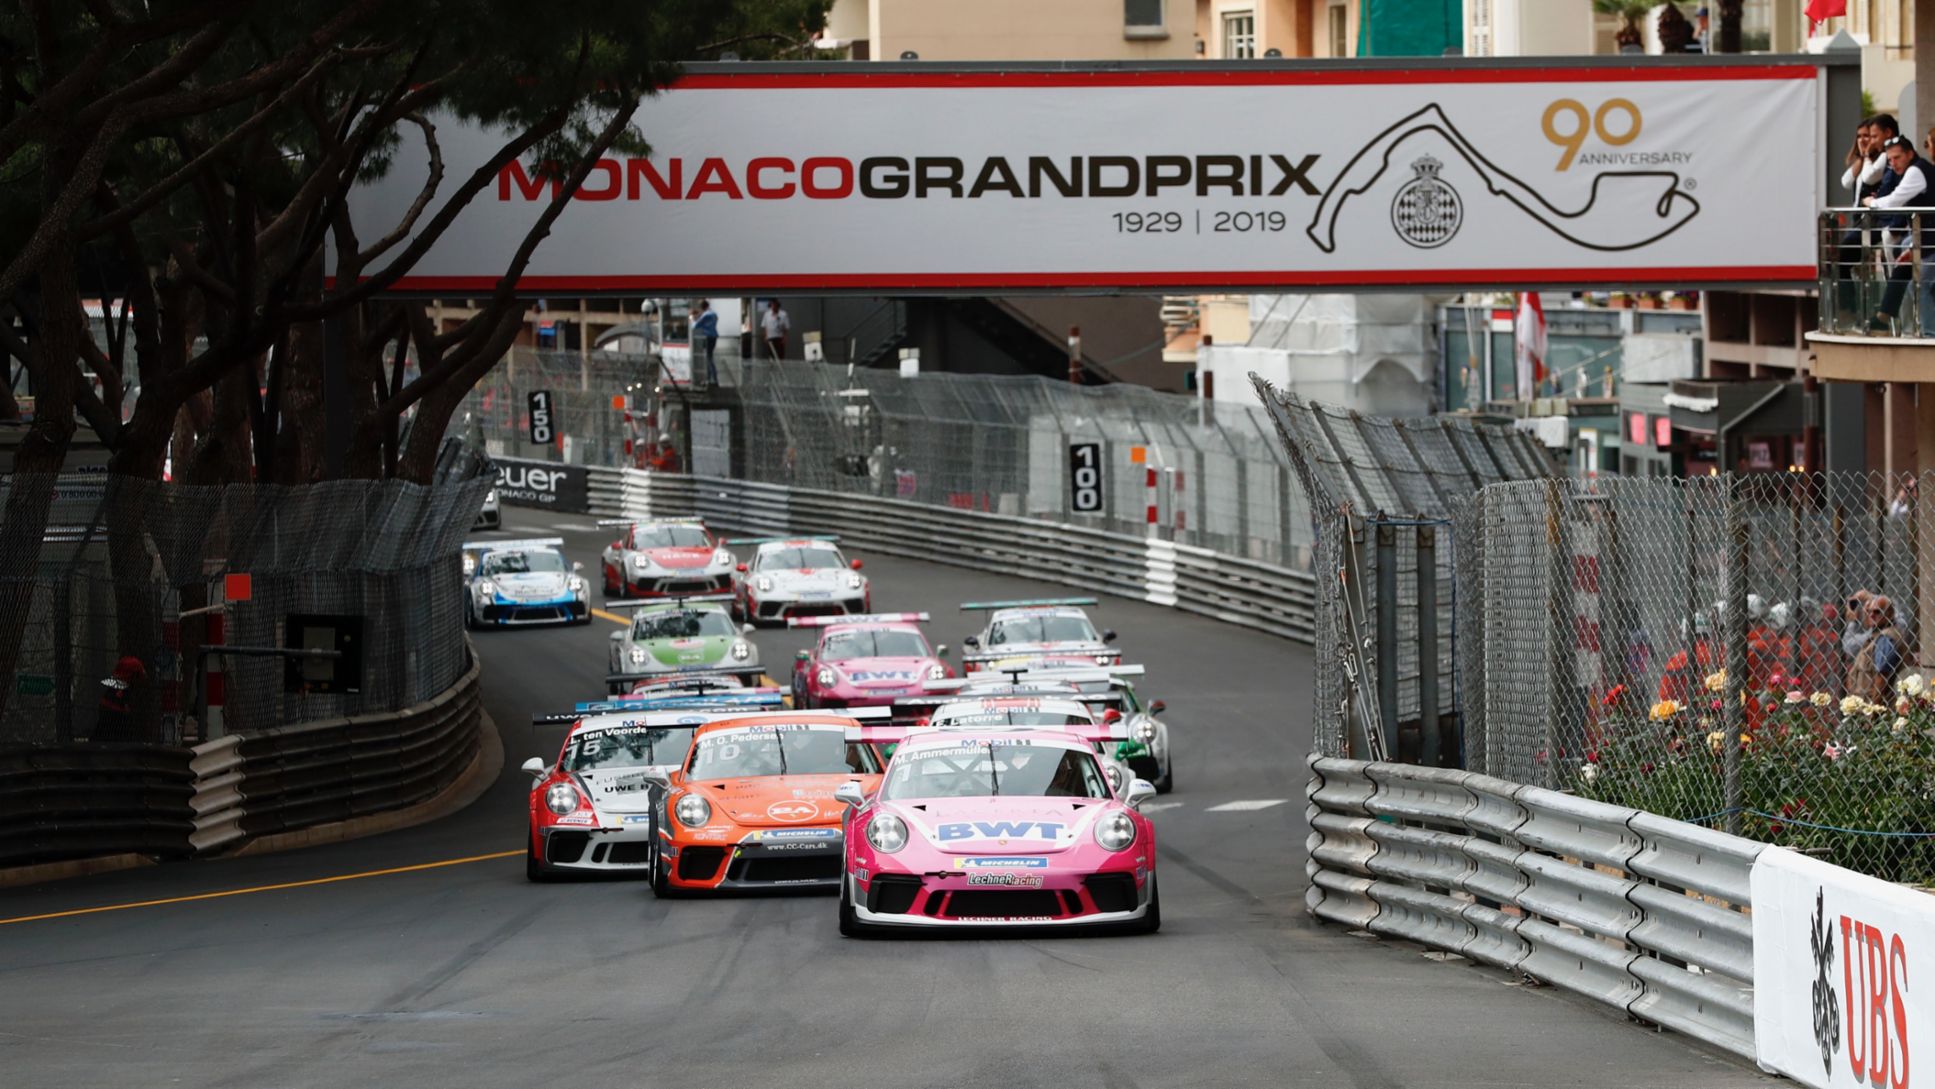 911 GT3 Cup, Porsche Mobil 1 Supercup, race, round 2, Monte Carlo/Monaco, 2019, Porsche AG